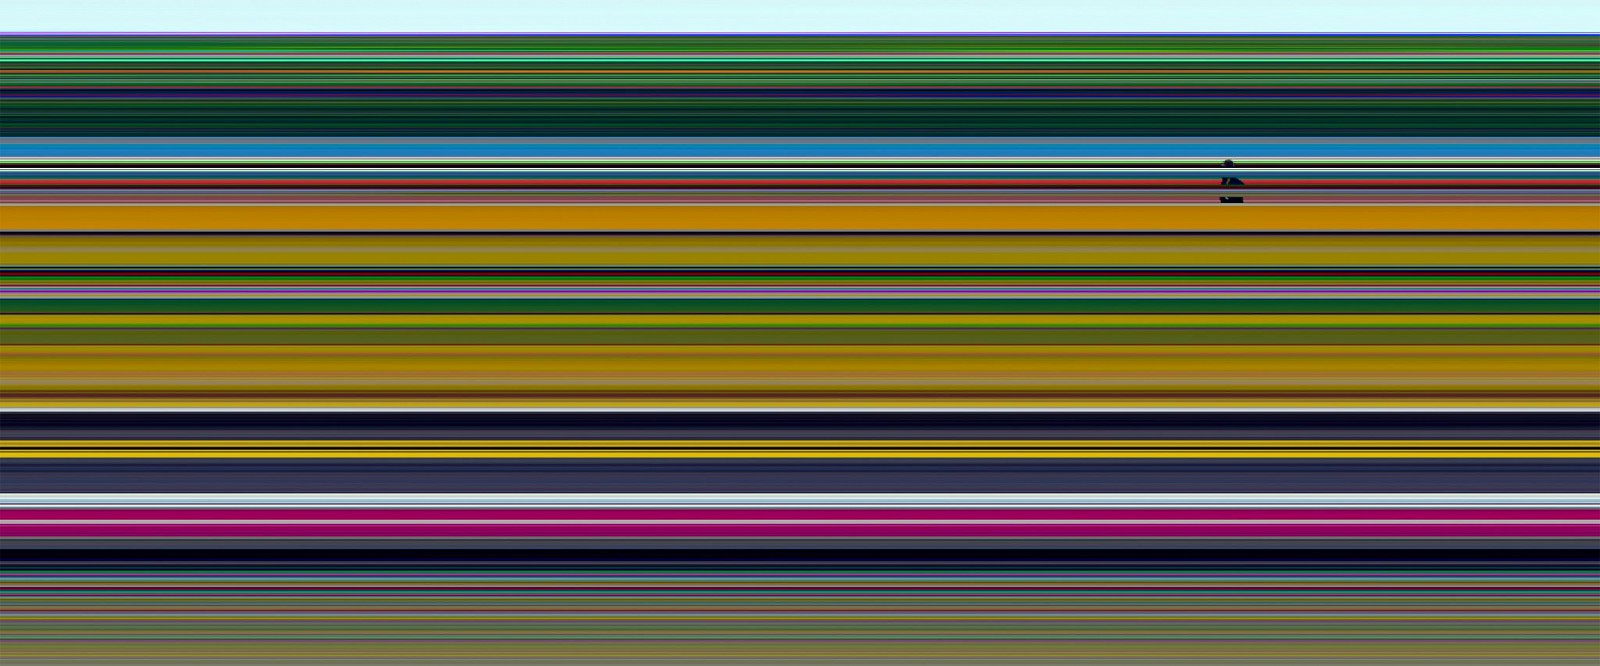 Jay Mark Johnson, LES PUCES DE MONTREUIL #2, 2008 Paris FR
archival pigment on paper, mounted on aluminum, 40 x 120 in. (101.6 x 304.8 cm)